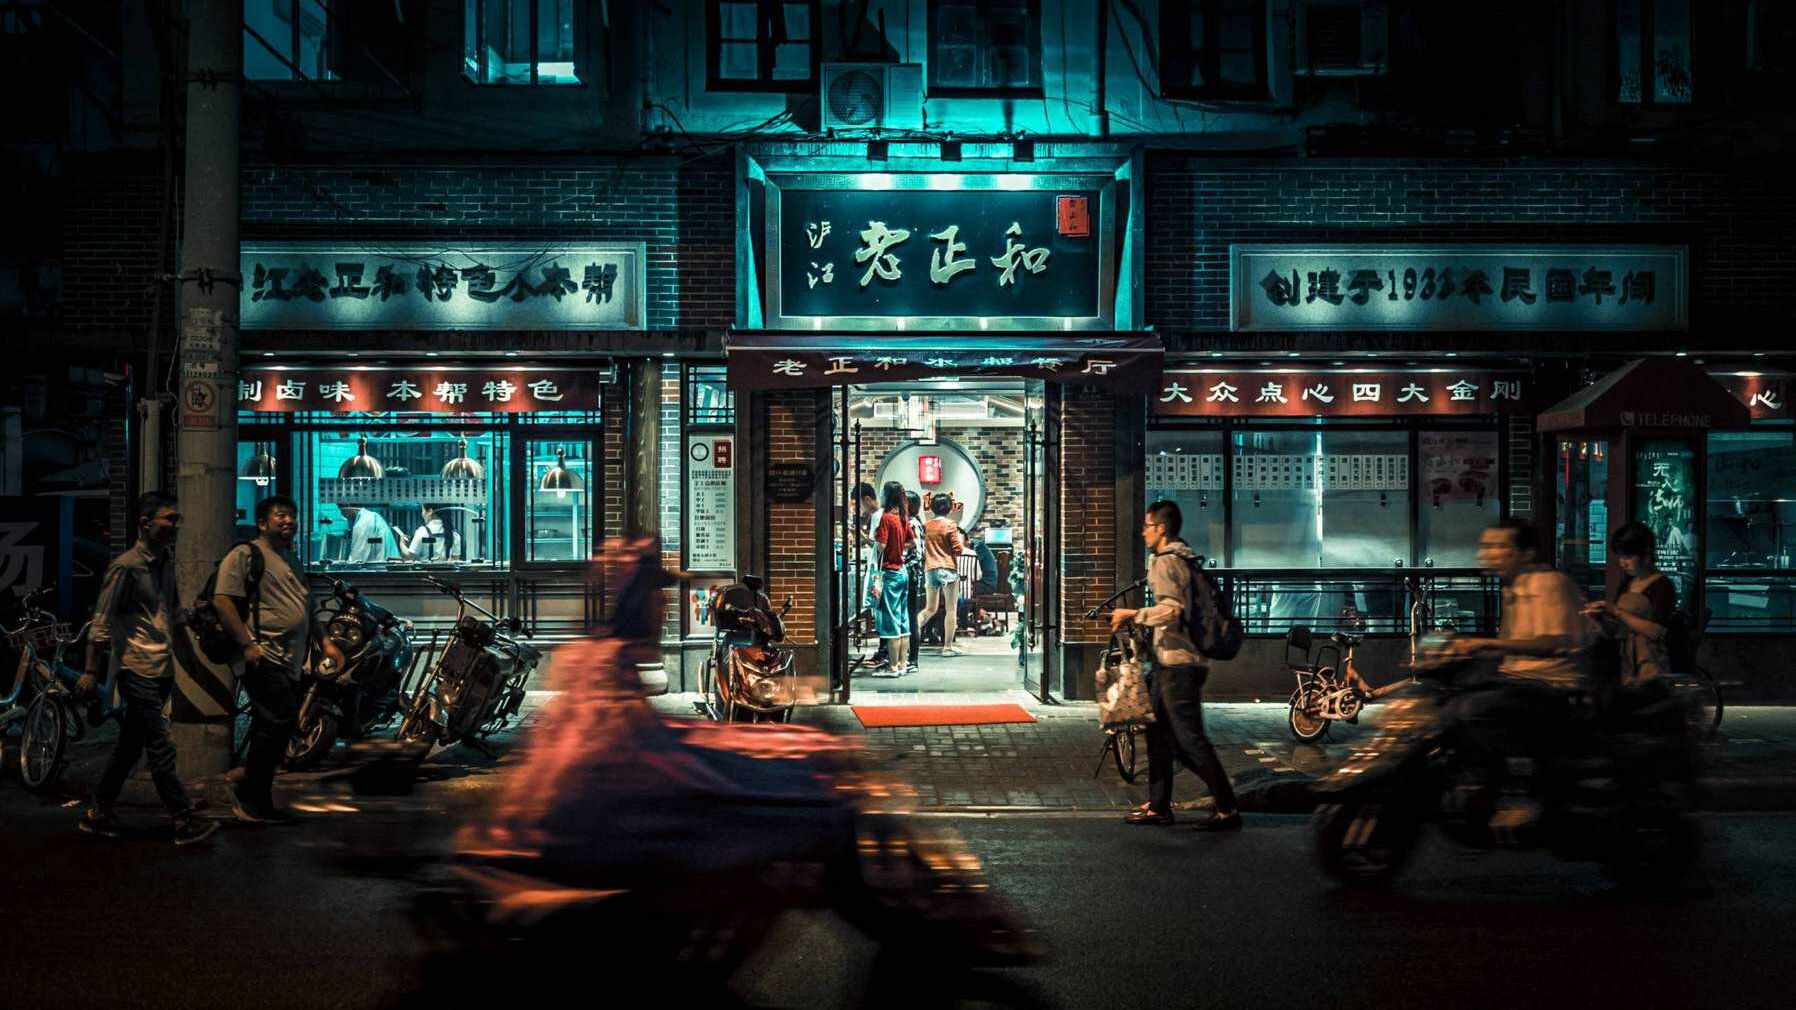 Bâtiment chinois de nuit